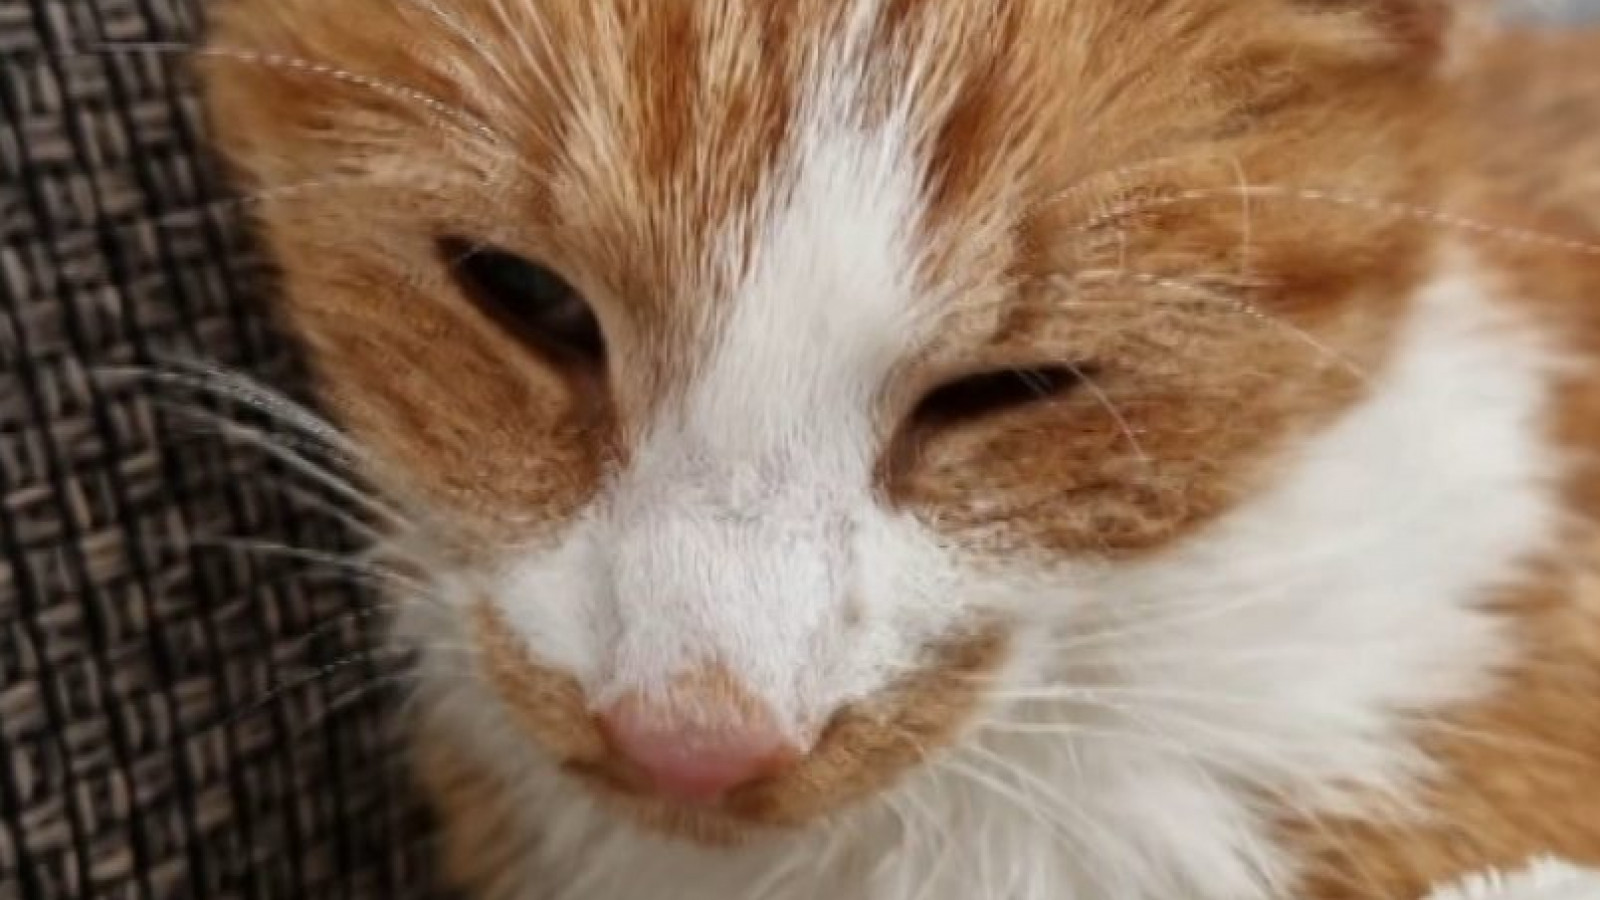 Dode katten mogelijk slachtoffer van vergiftiging met koelvloeistof NH Nieuws